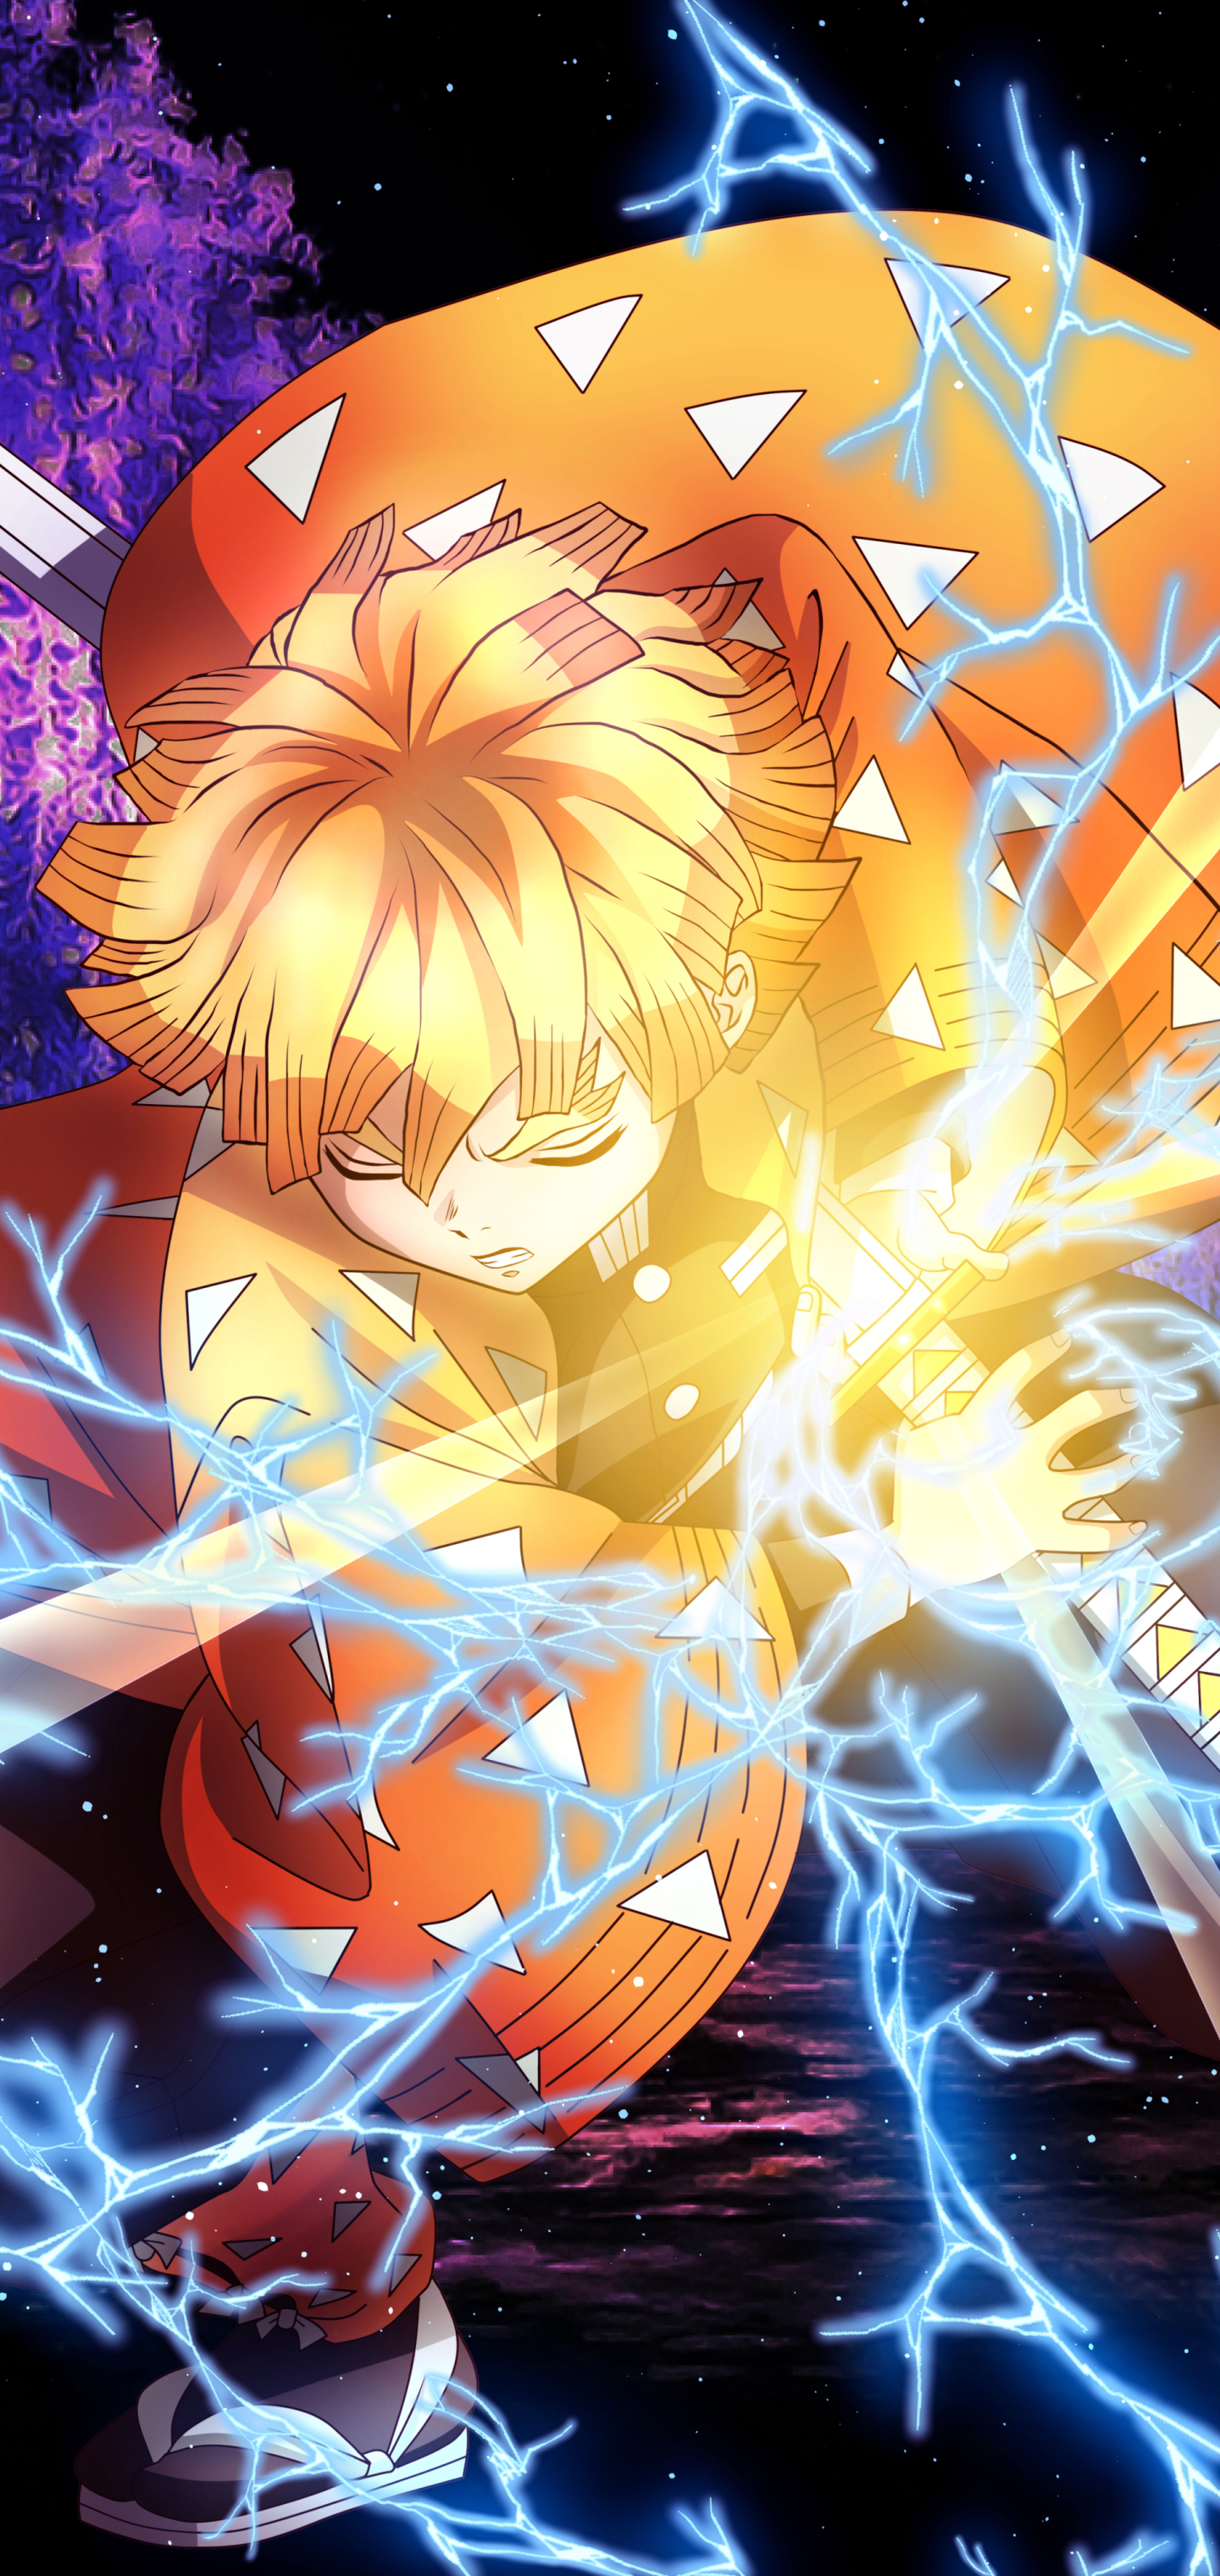 Download mobile wallpaper Anime, Demon Slayer: Kimetsu No Yaiba, Zenitsu Agatsuma for free.